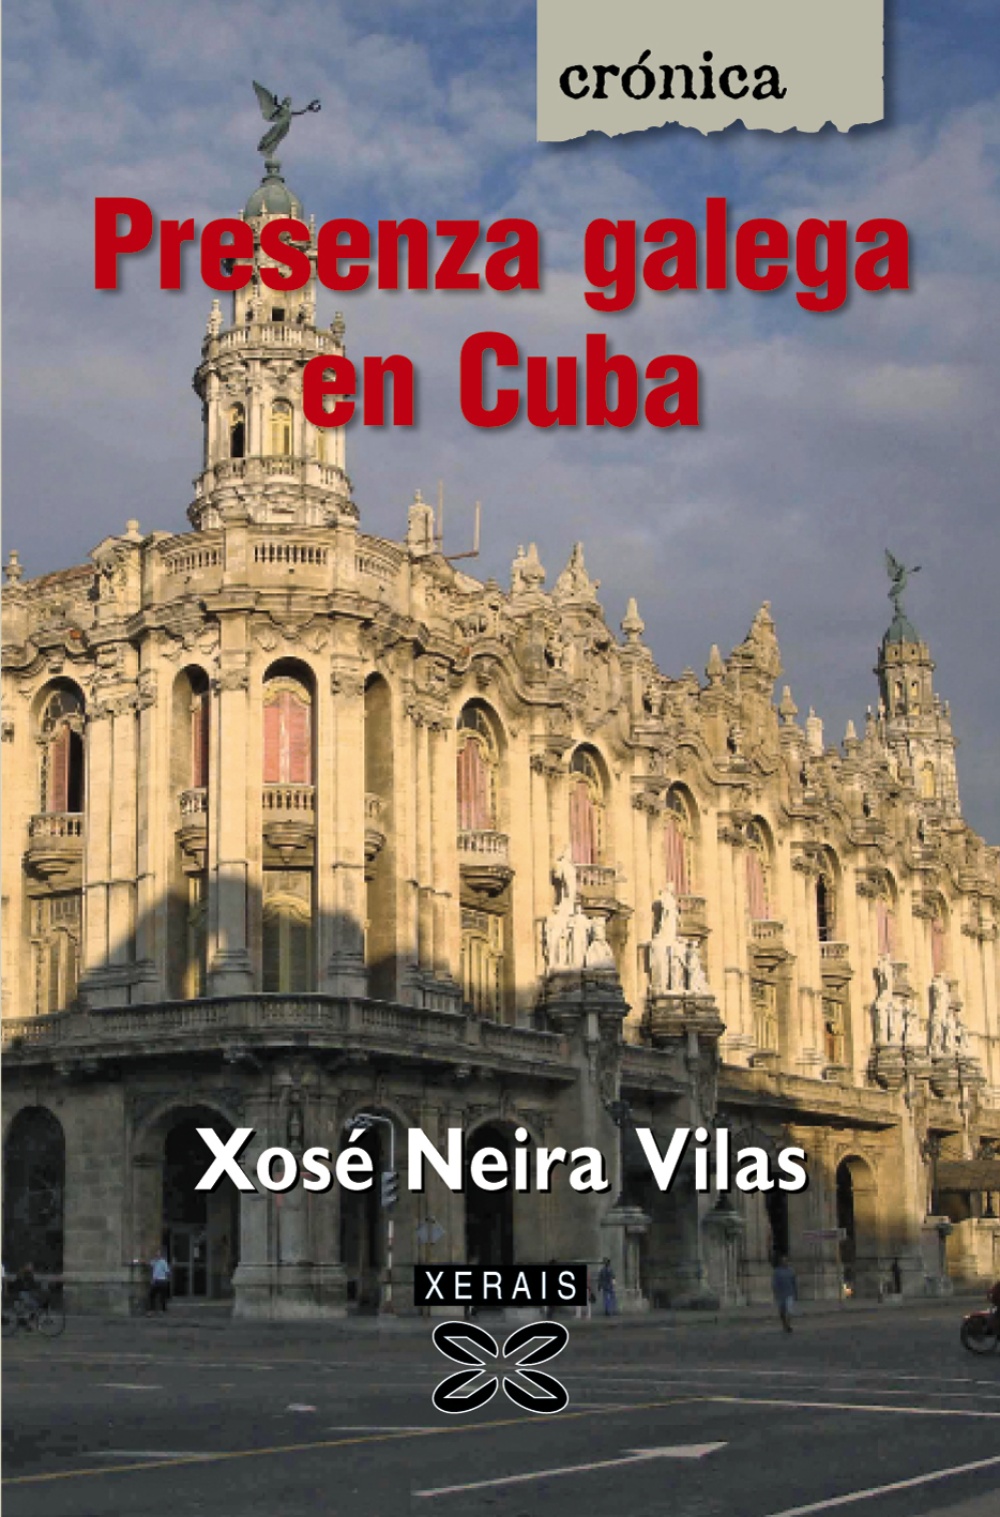 Presenza galega en Cuba